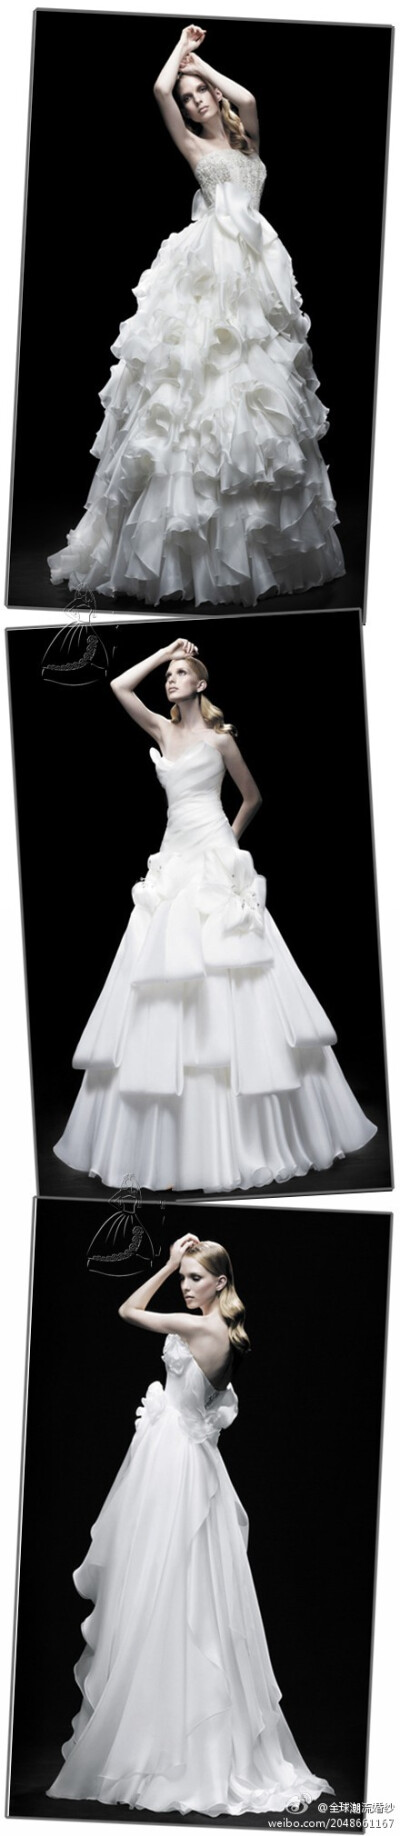 纯白款婚纱~在黑色背景的映衬下更纯净更美~~~